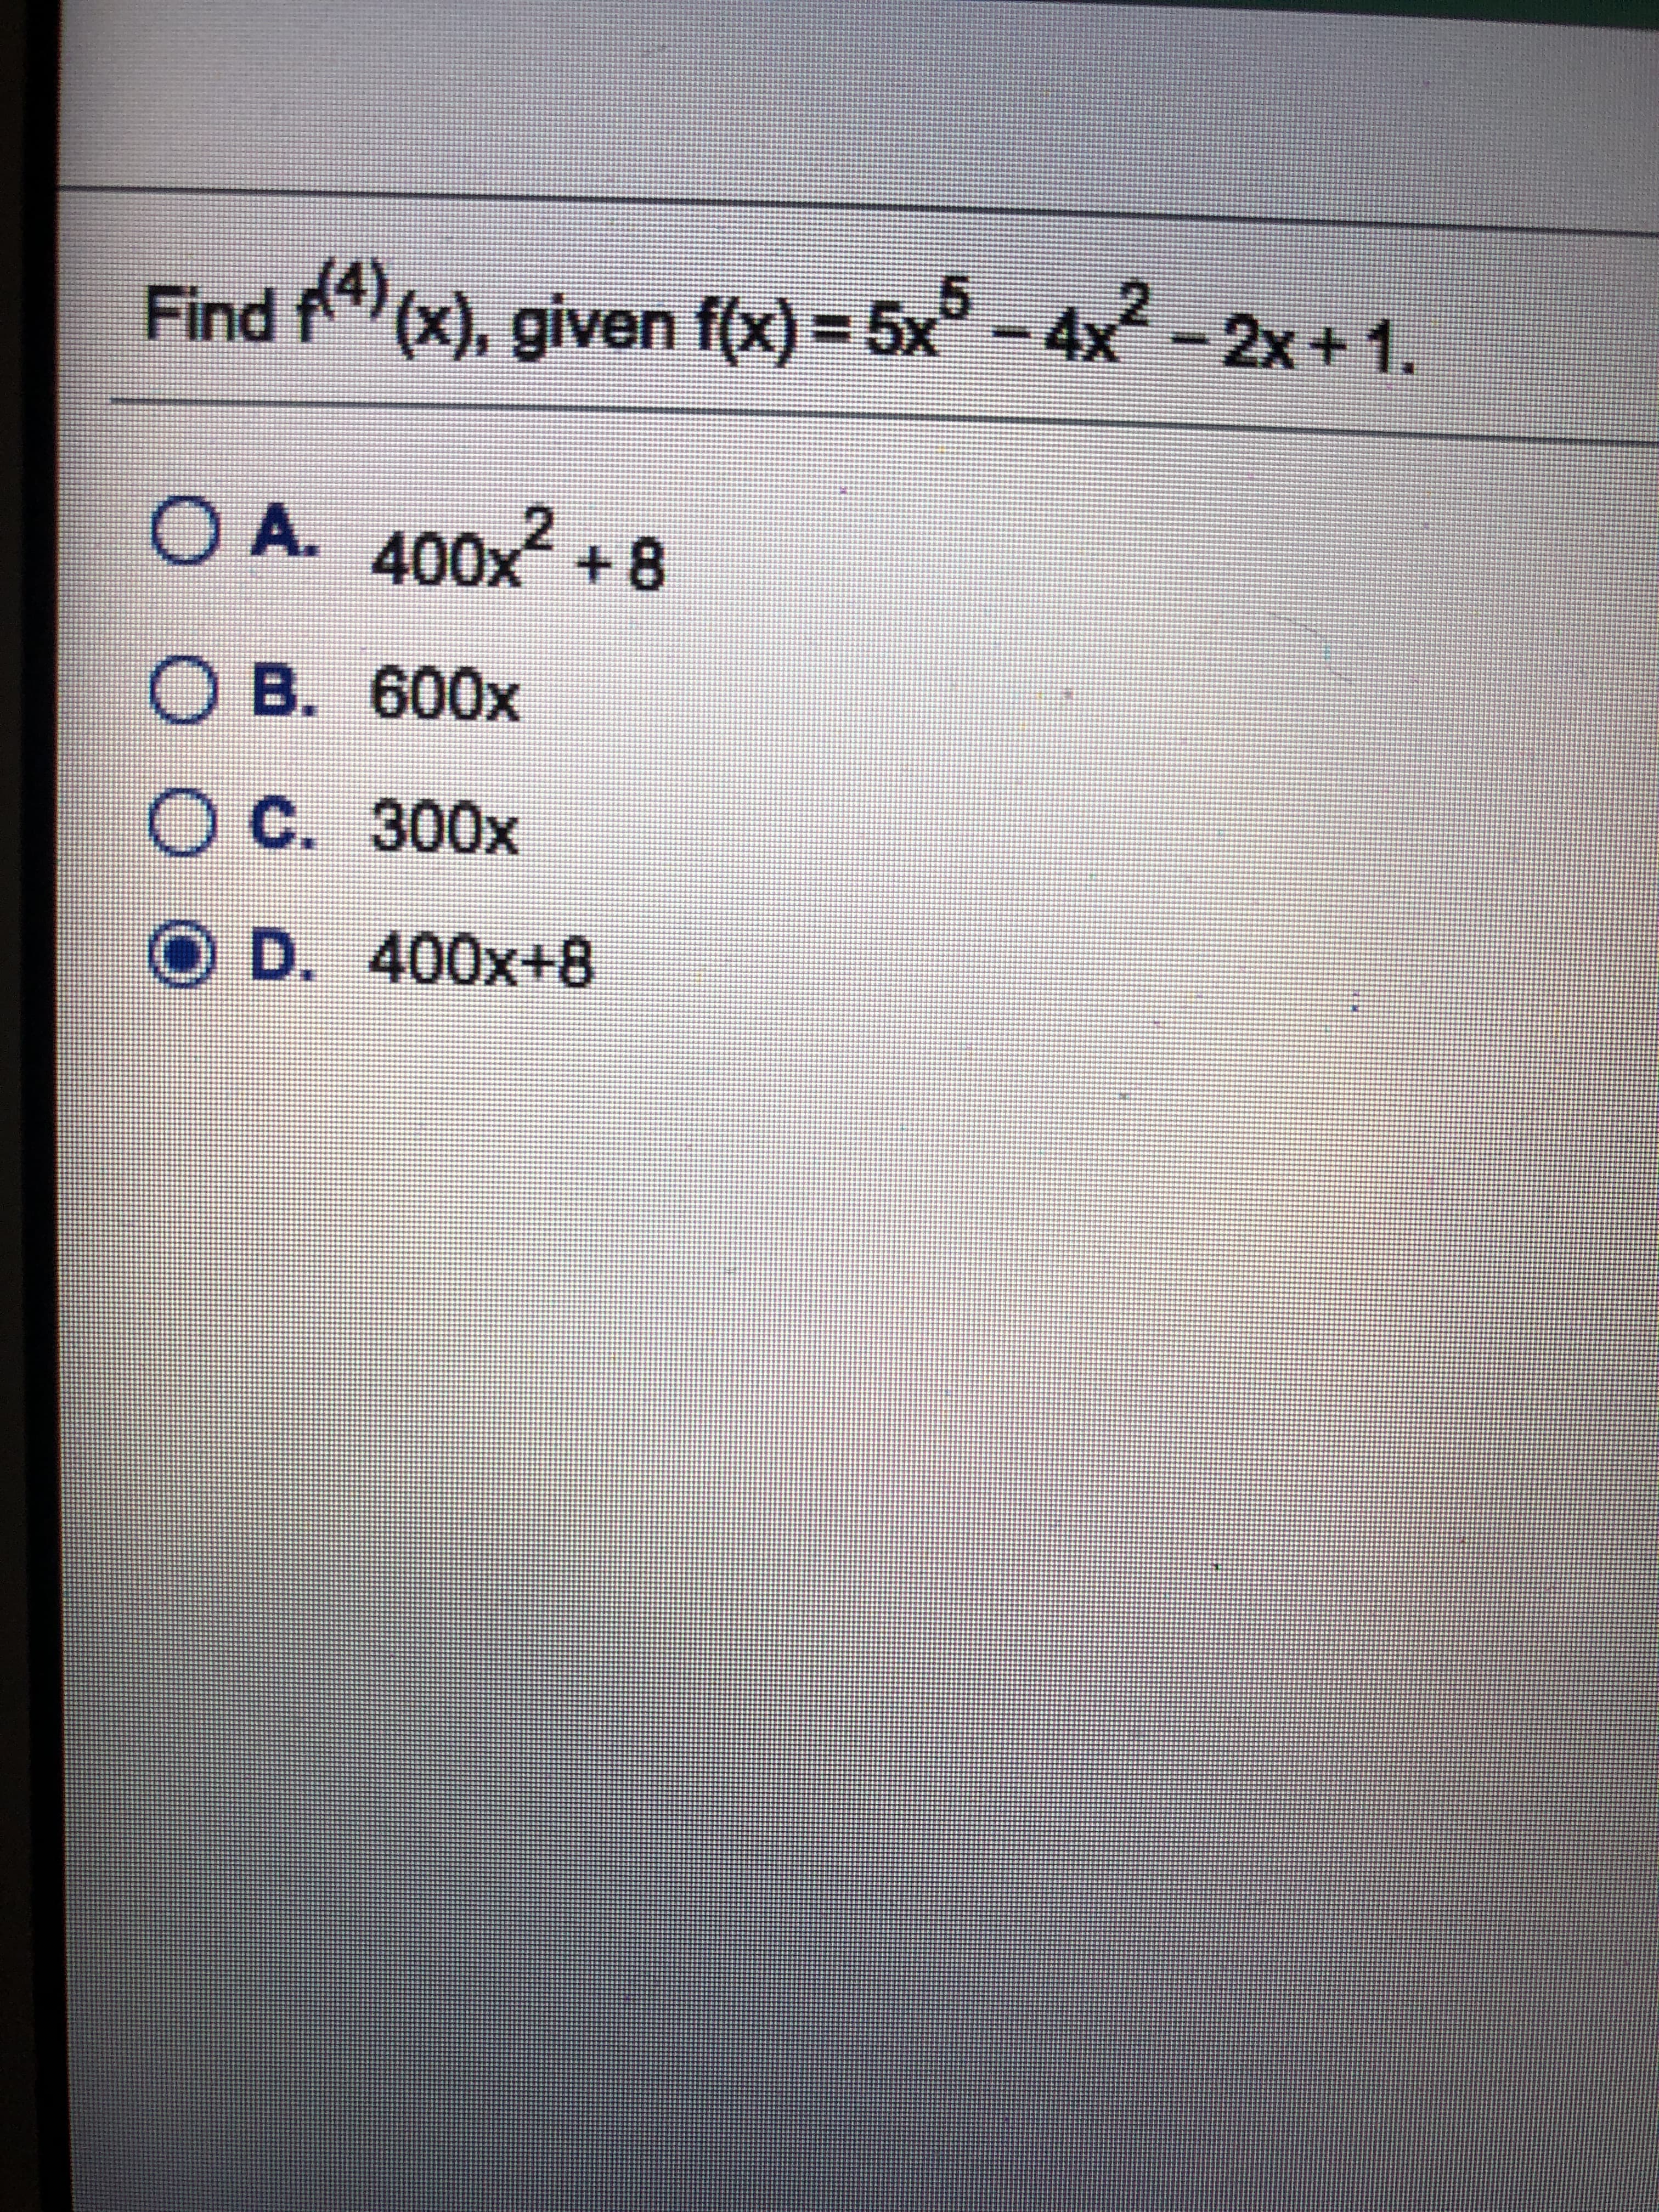 Find f4(x), given f(x) = 5x° -4x-2x+ 1.
O A.
400x+8
B. 600x
C. 300x
D. 400x+8
